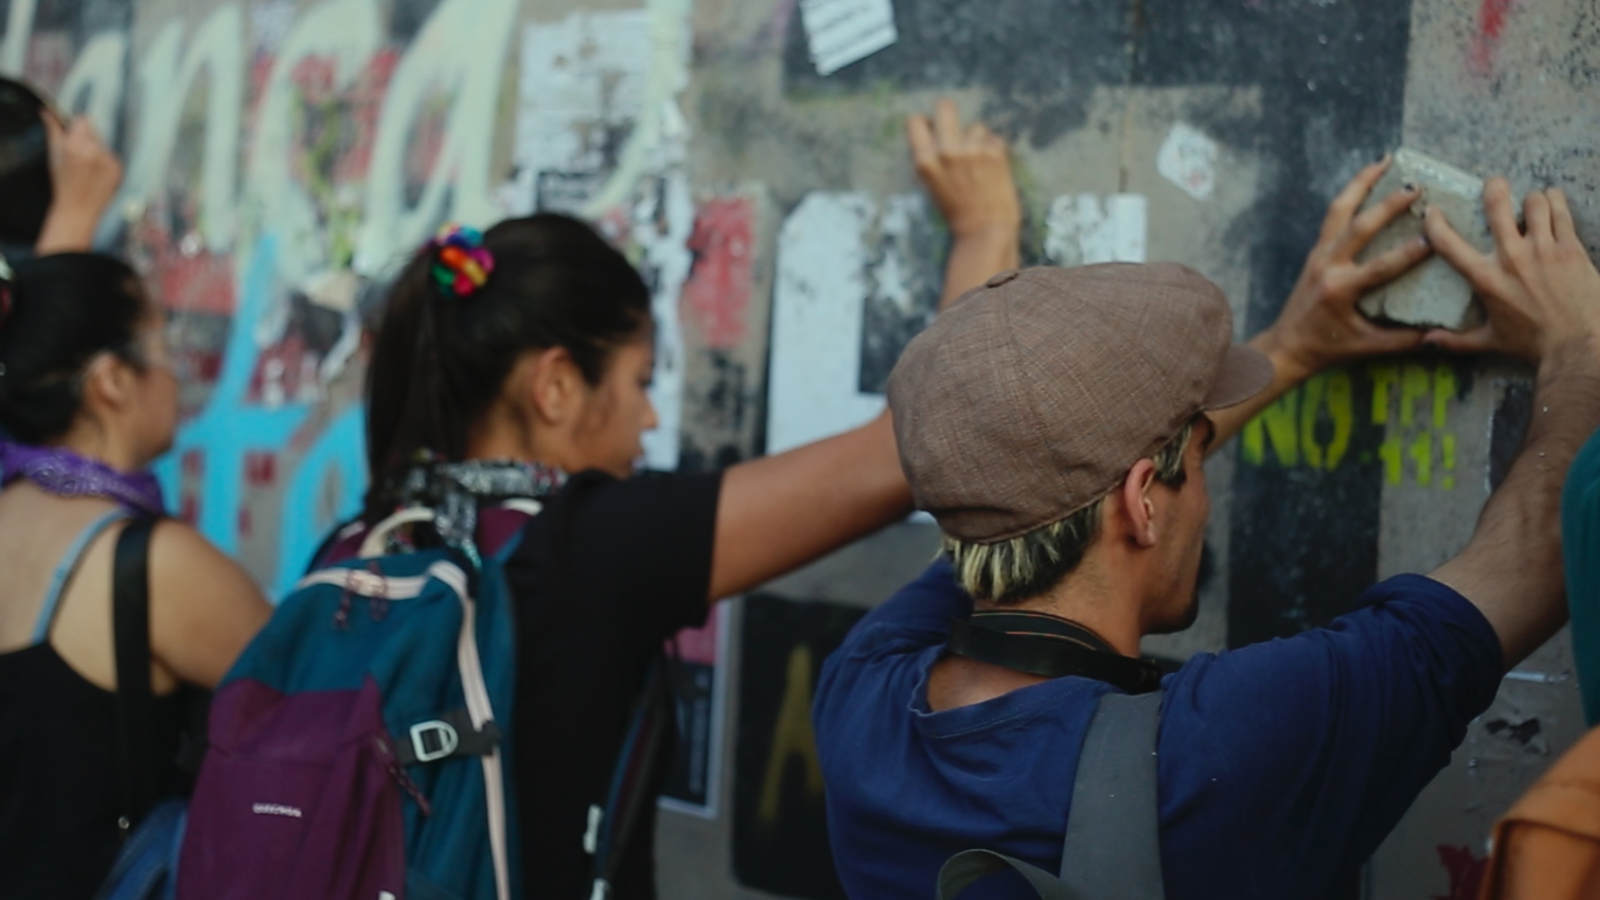 Kuvassa on selin nuori tyttö ja poika etualalla laittamassa lappuja seinämuuriin, jossa on paljon viestejä ja lisäksi graffiteja.